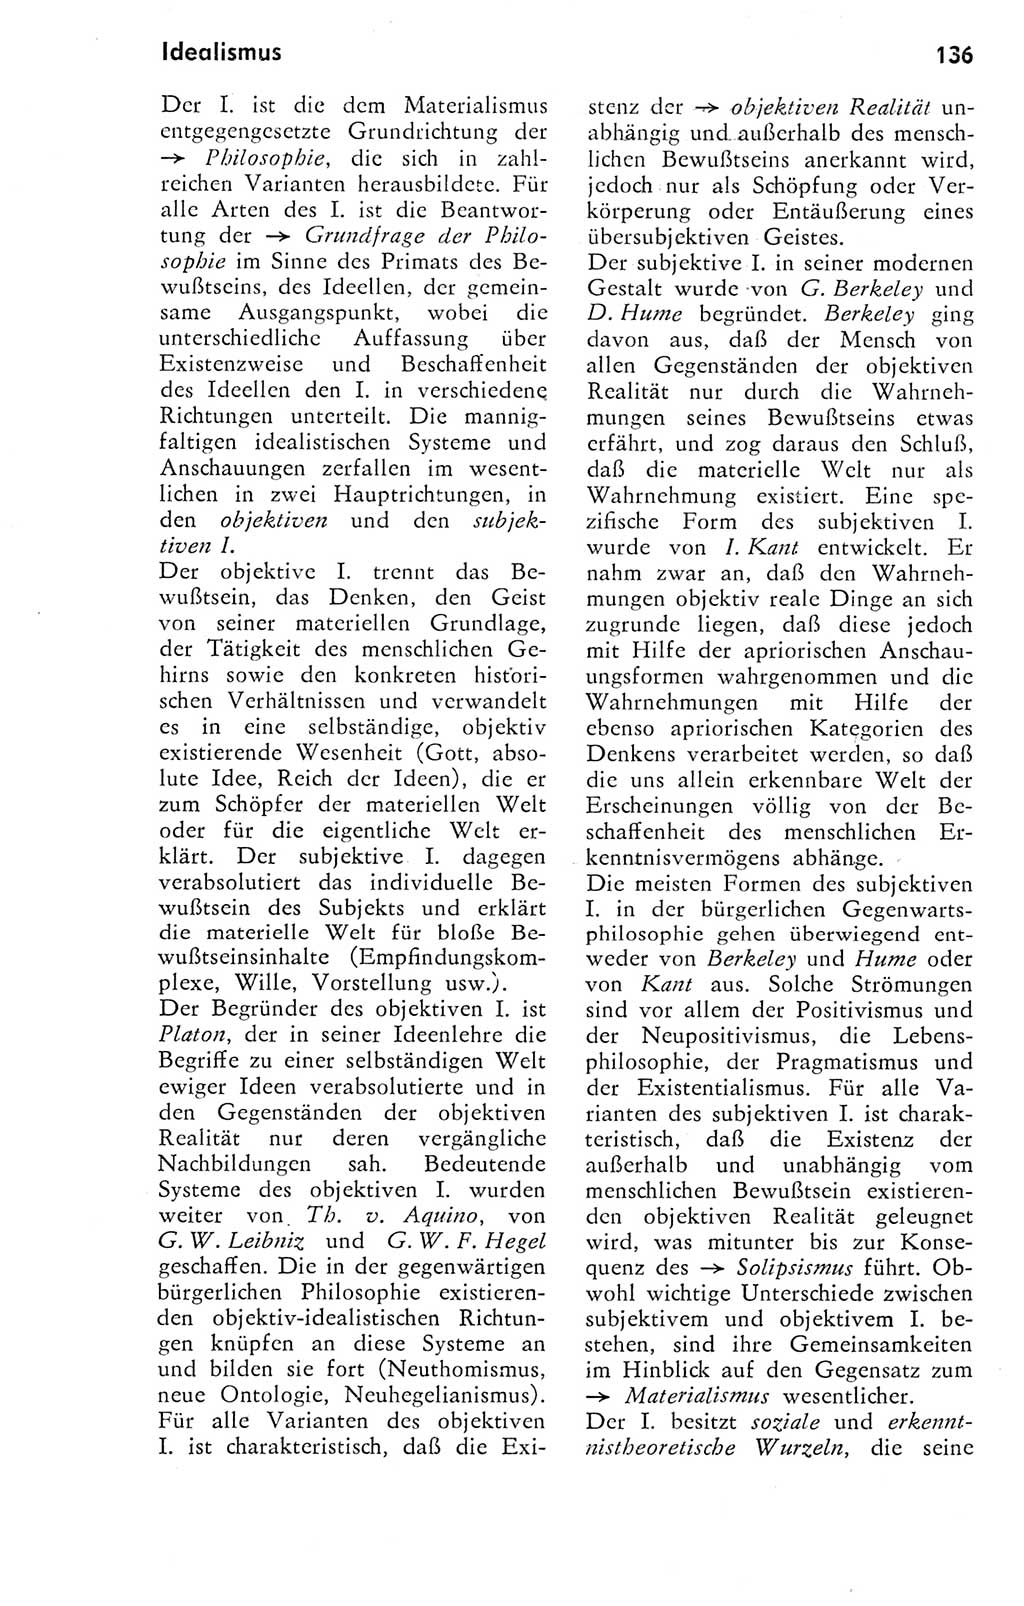 Kleines Wörterbuch der marxistisch-leninistischen Philosophie [Deutsche Demokratische Republik (DDR)] 1974, Seite 136 (Kl. Wb. ML Phil. DDR 1974, S. 136)